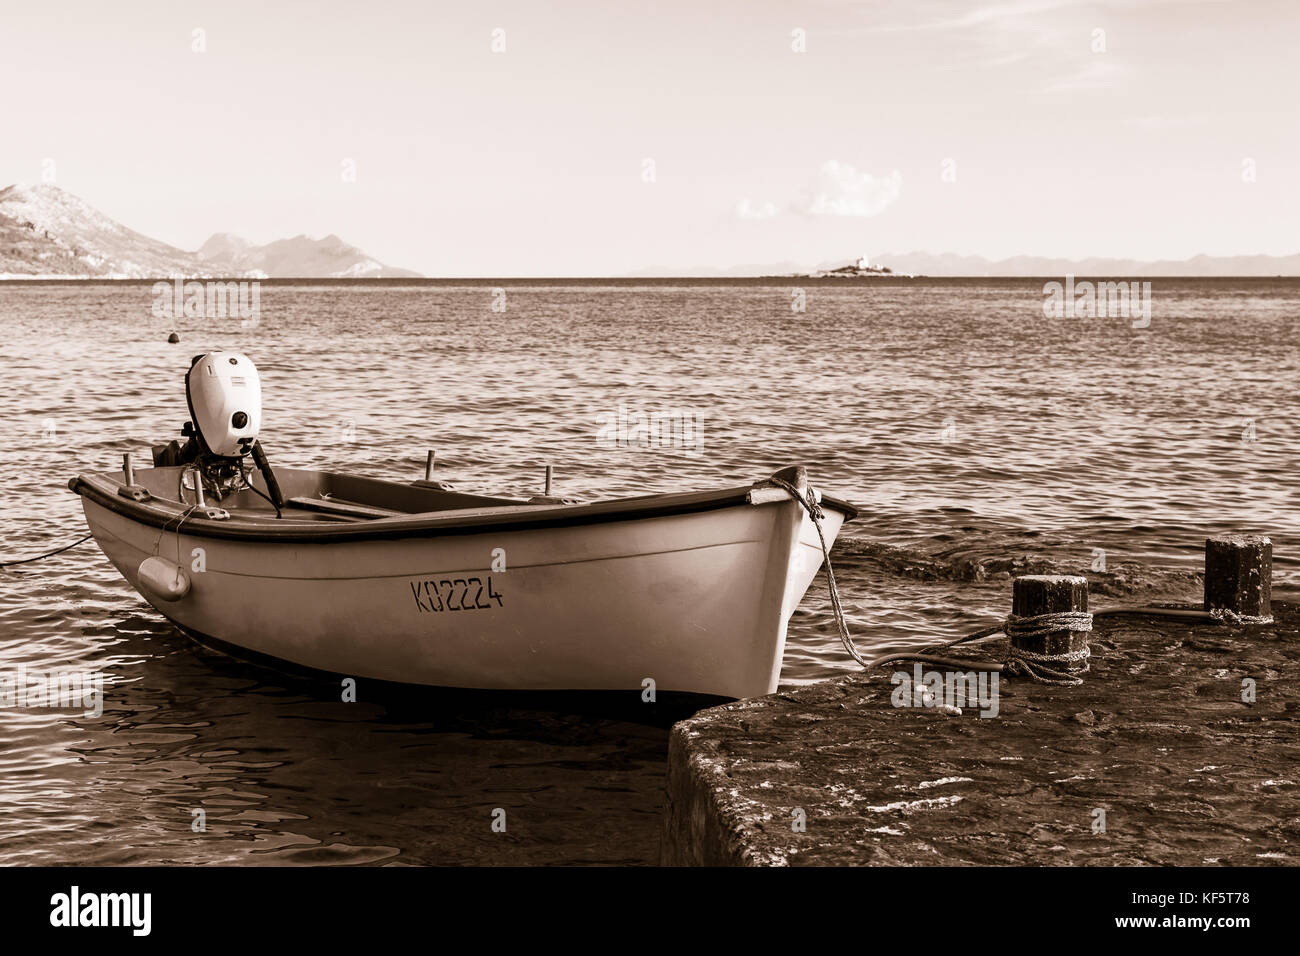 Une image aux tons sépia/groupe d'un petit bateau de pêche amarré à bord de l'eau à orebic, la charmante station balnéaire de la péninsule de Peljesac en Croatie. Banque D'Images